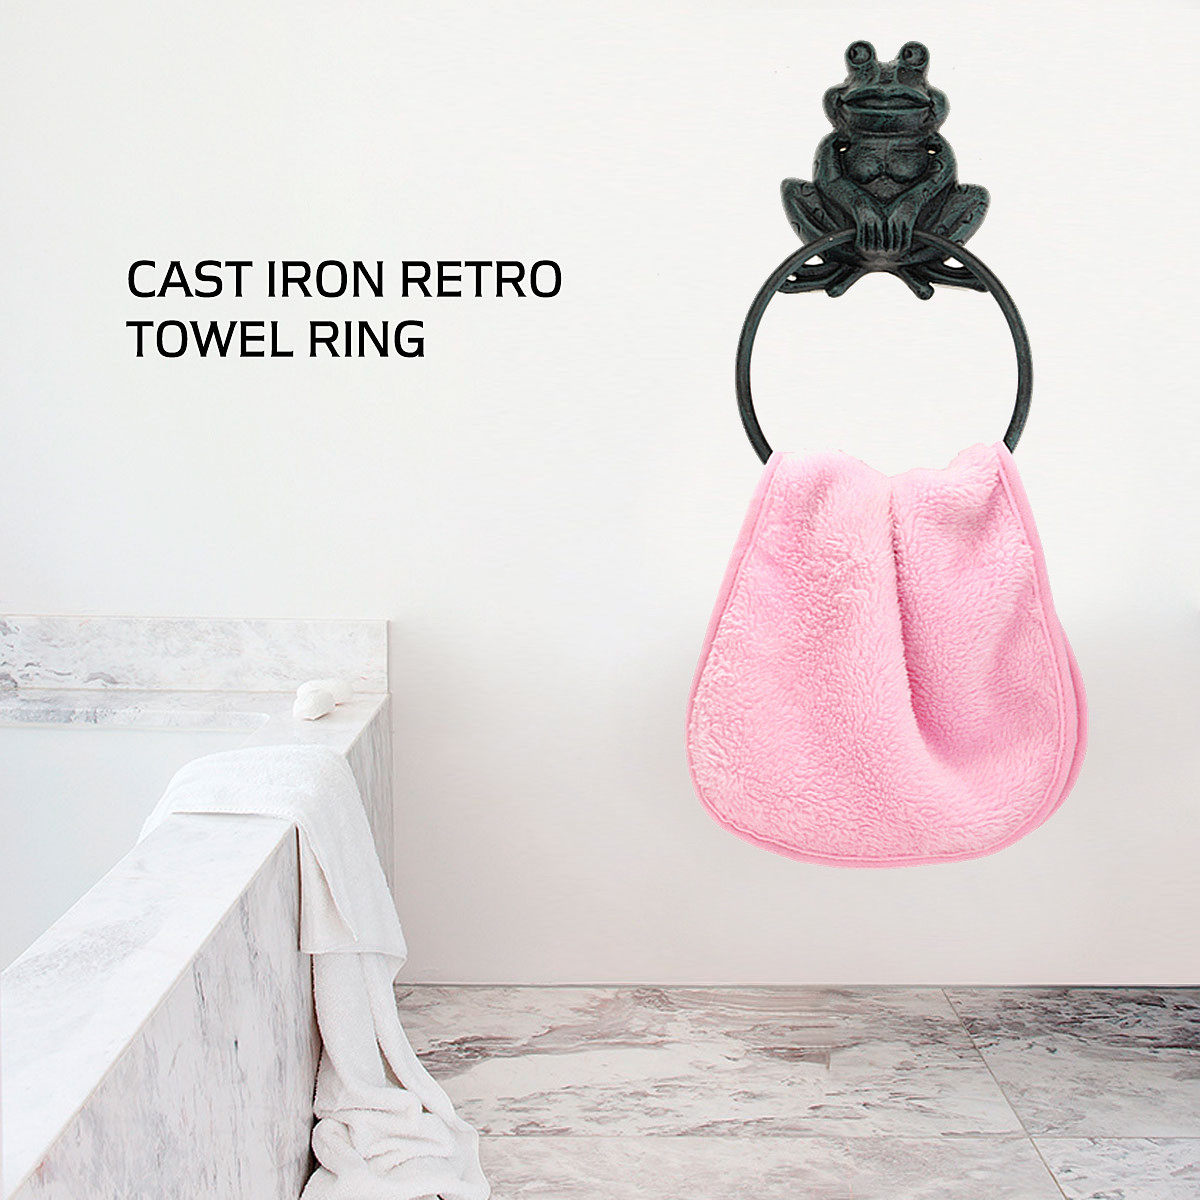 Rustic-Industrial-Tap-Rings-Rack-Wrought-Iron-Vintage-Round-Hanging-Black-Metal-Towel-Holder-Bathroo-1427273-1